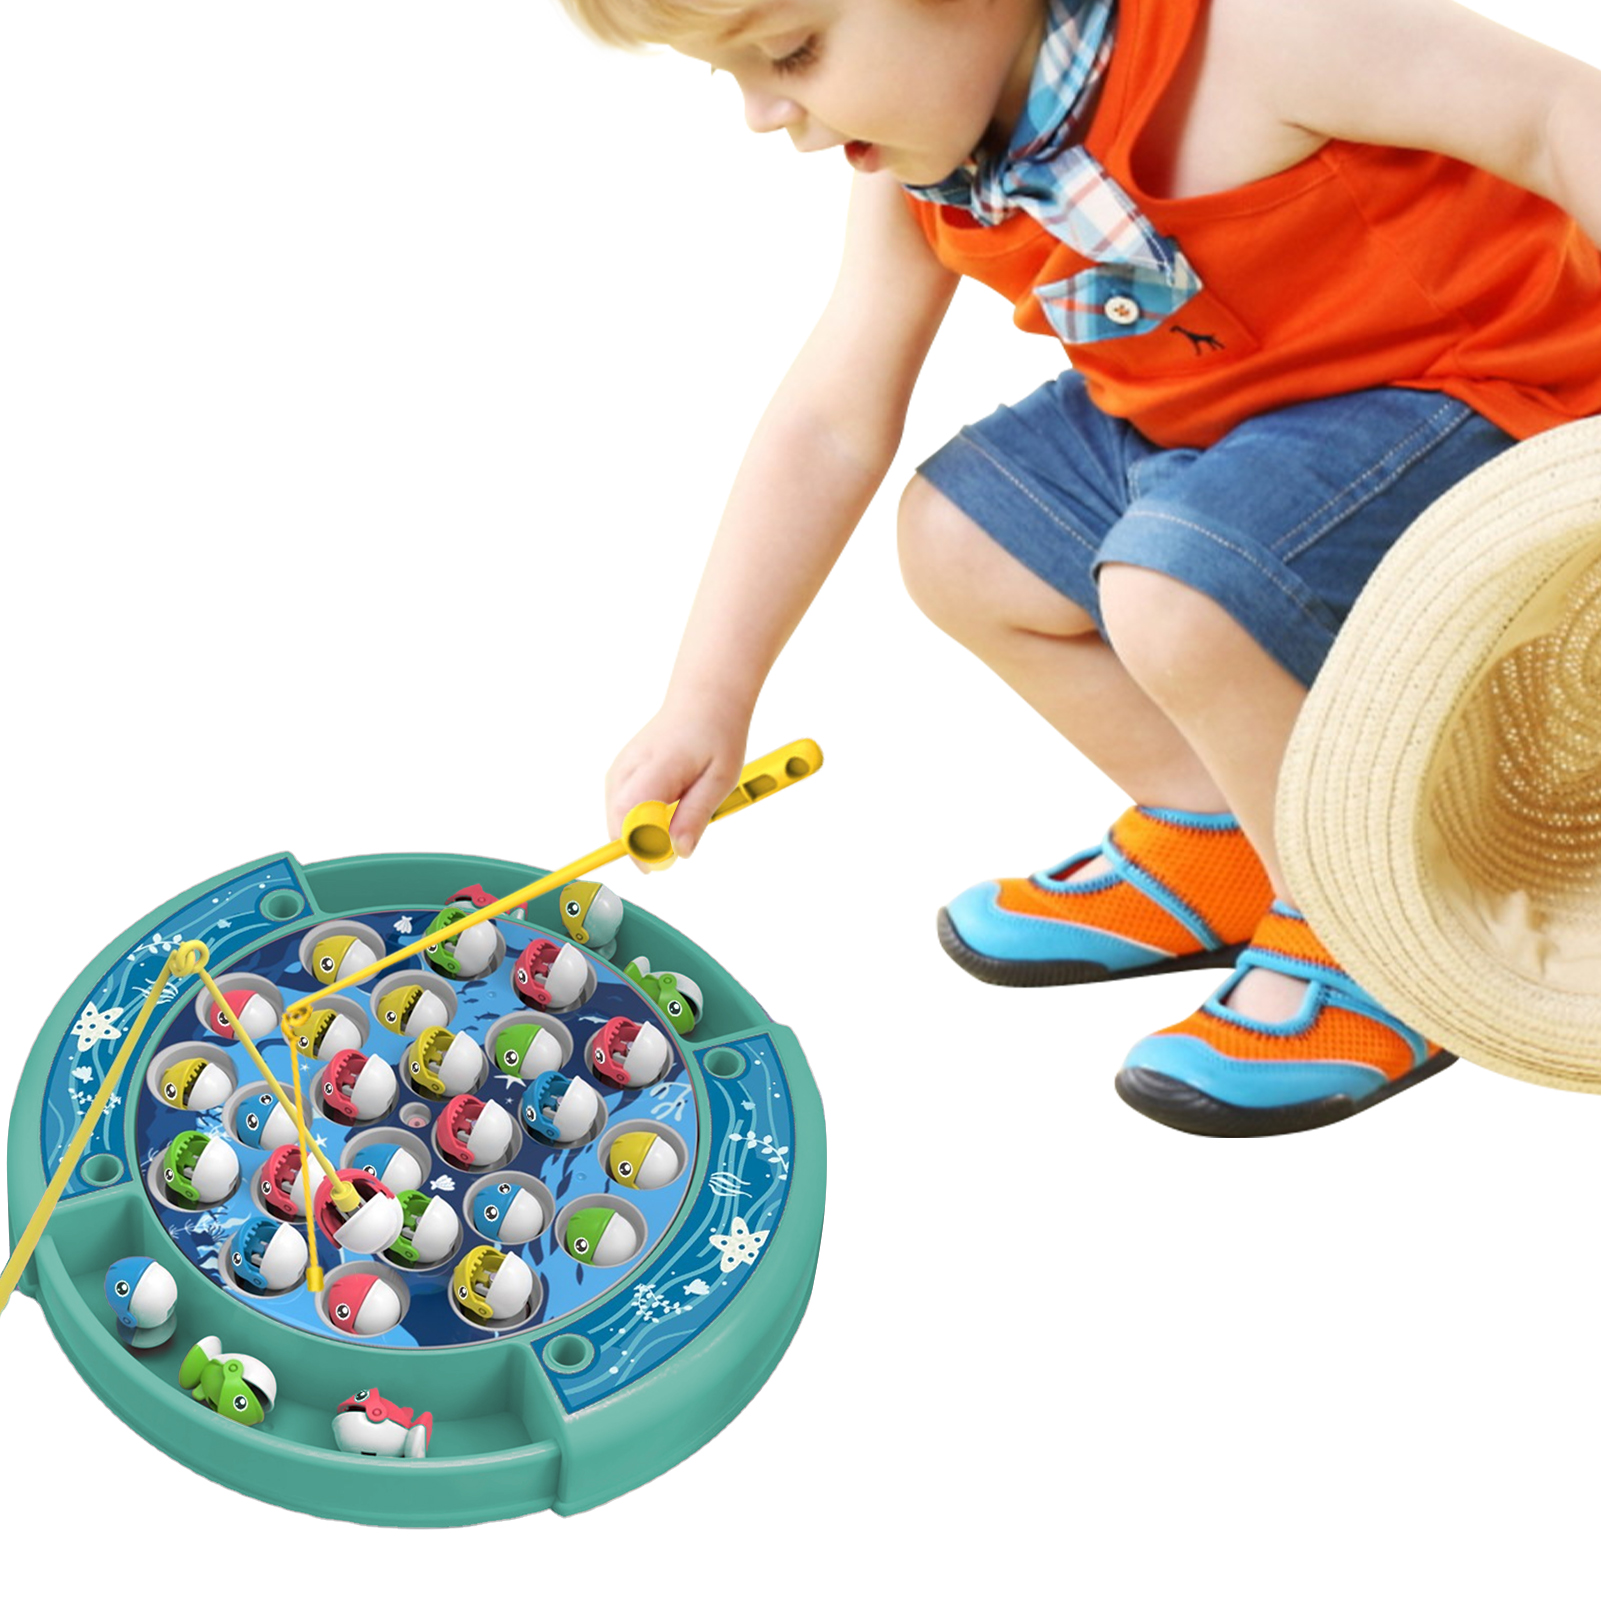 Câu Cá Trò chơi cho trẻ em 3-5 Toddler câu cá cực đồ chơi với xoay ao âm